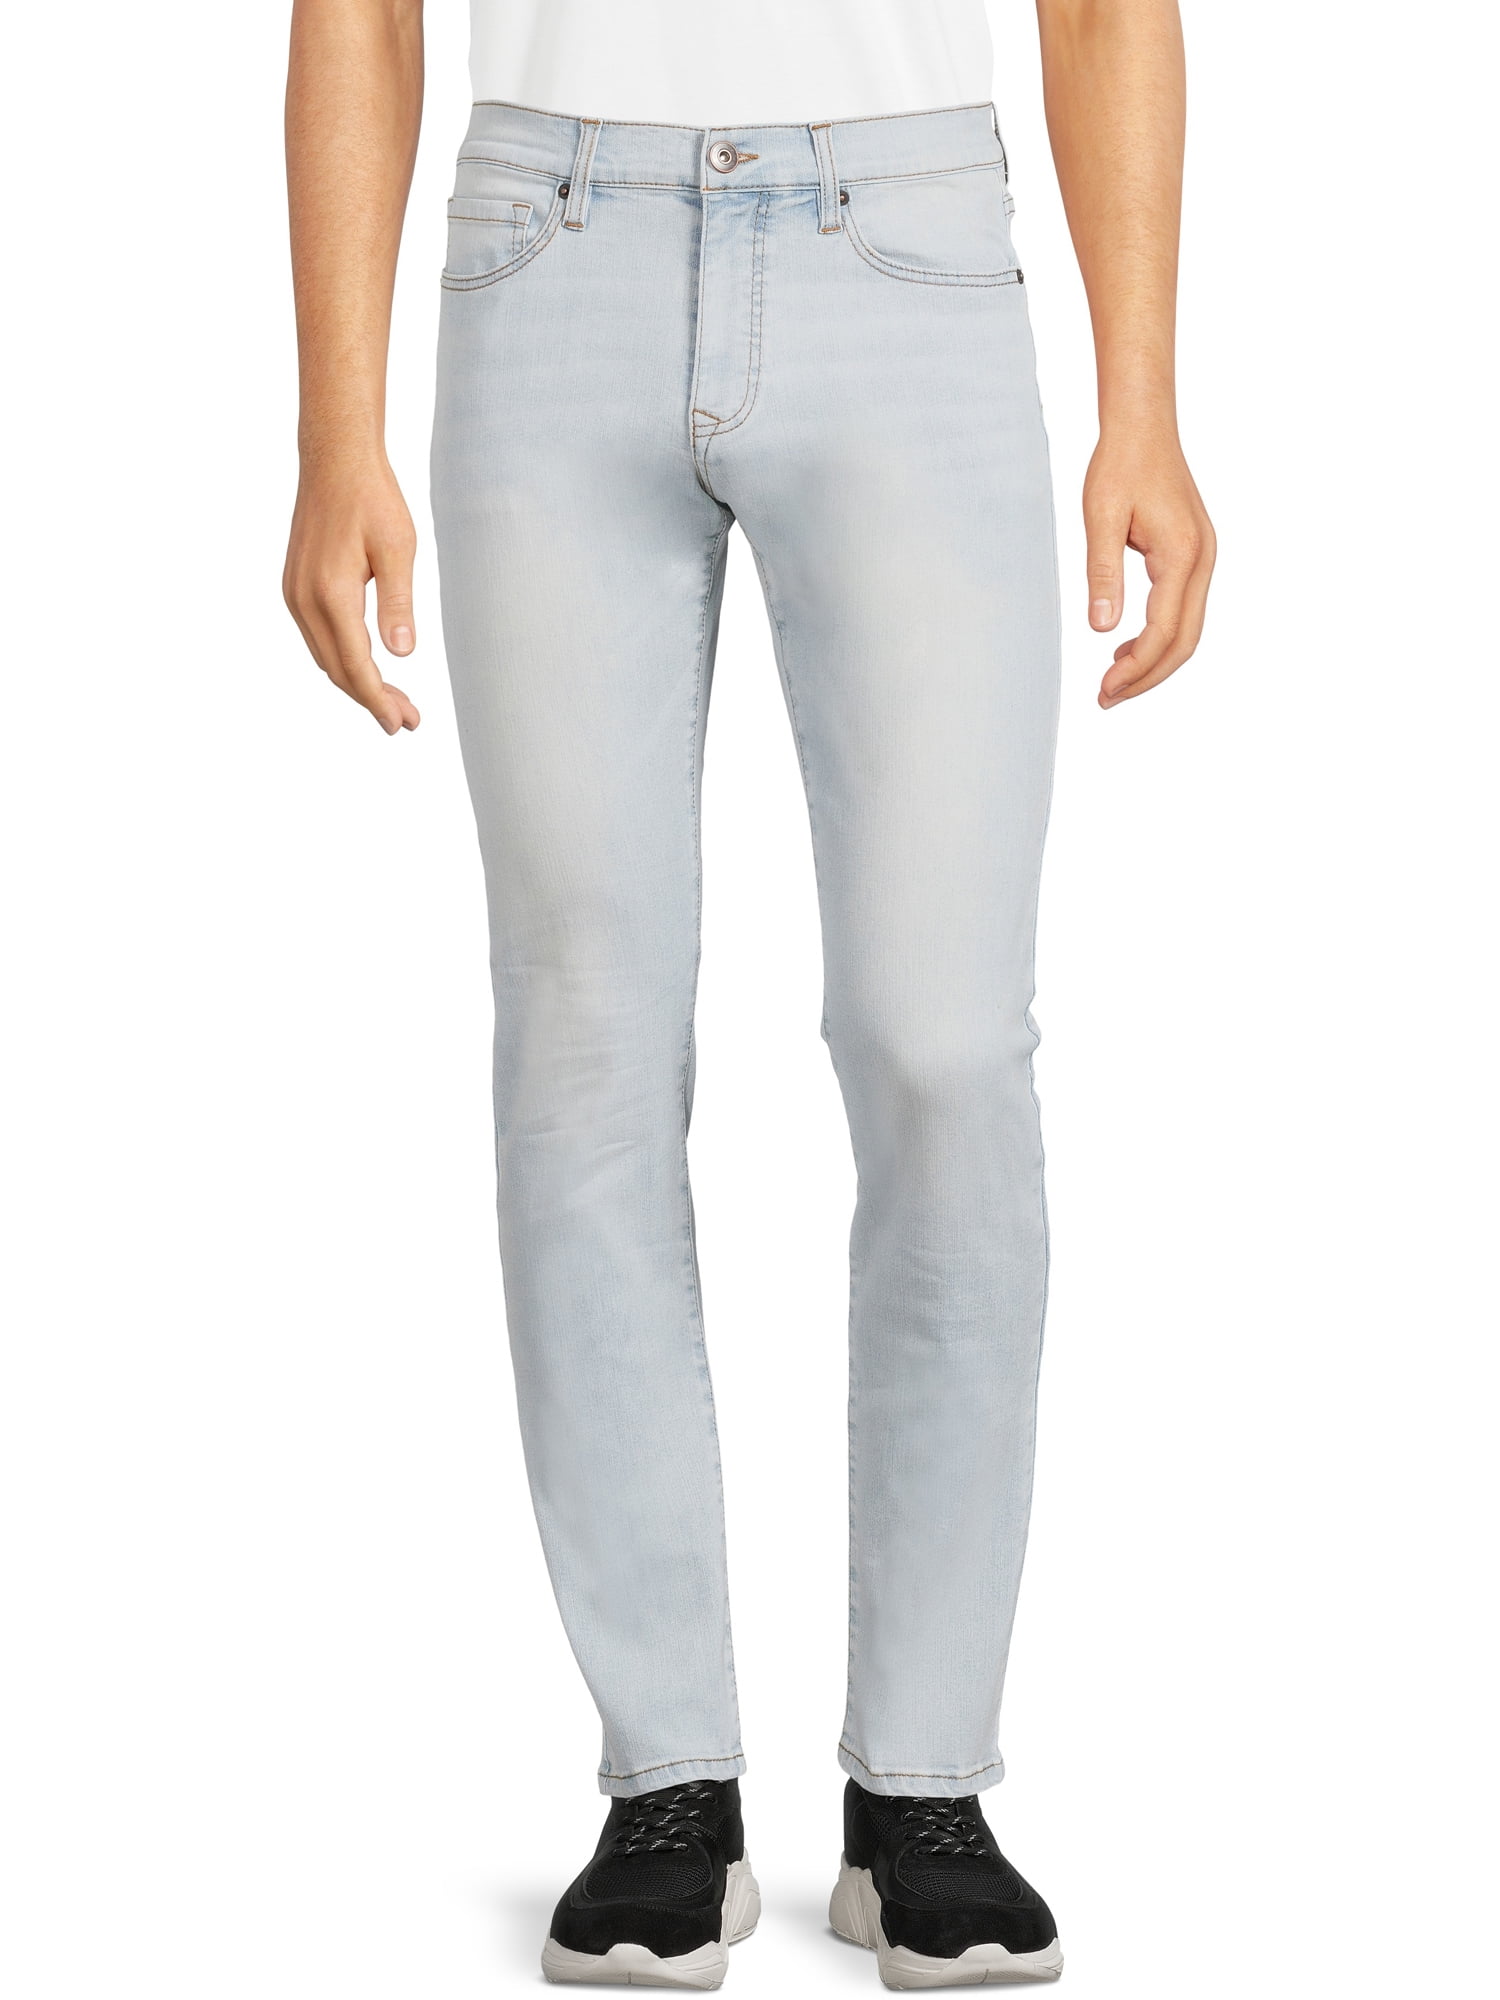 New Mens Jeans Slim Fit Distressed Rip & Plain Regular Pants Denim Jean 30-36" 